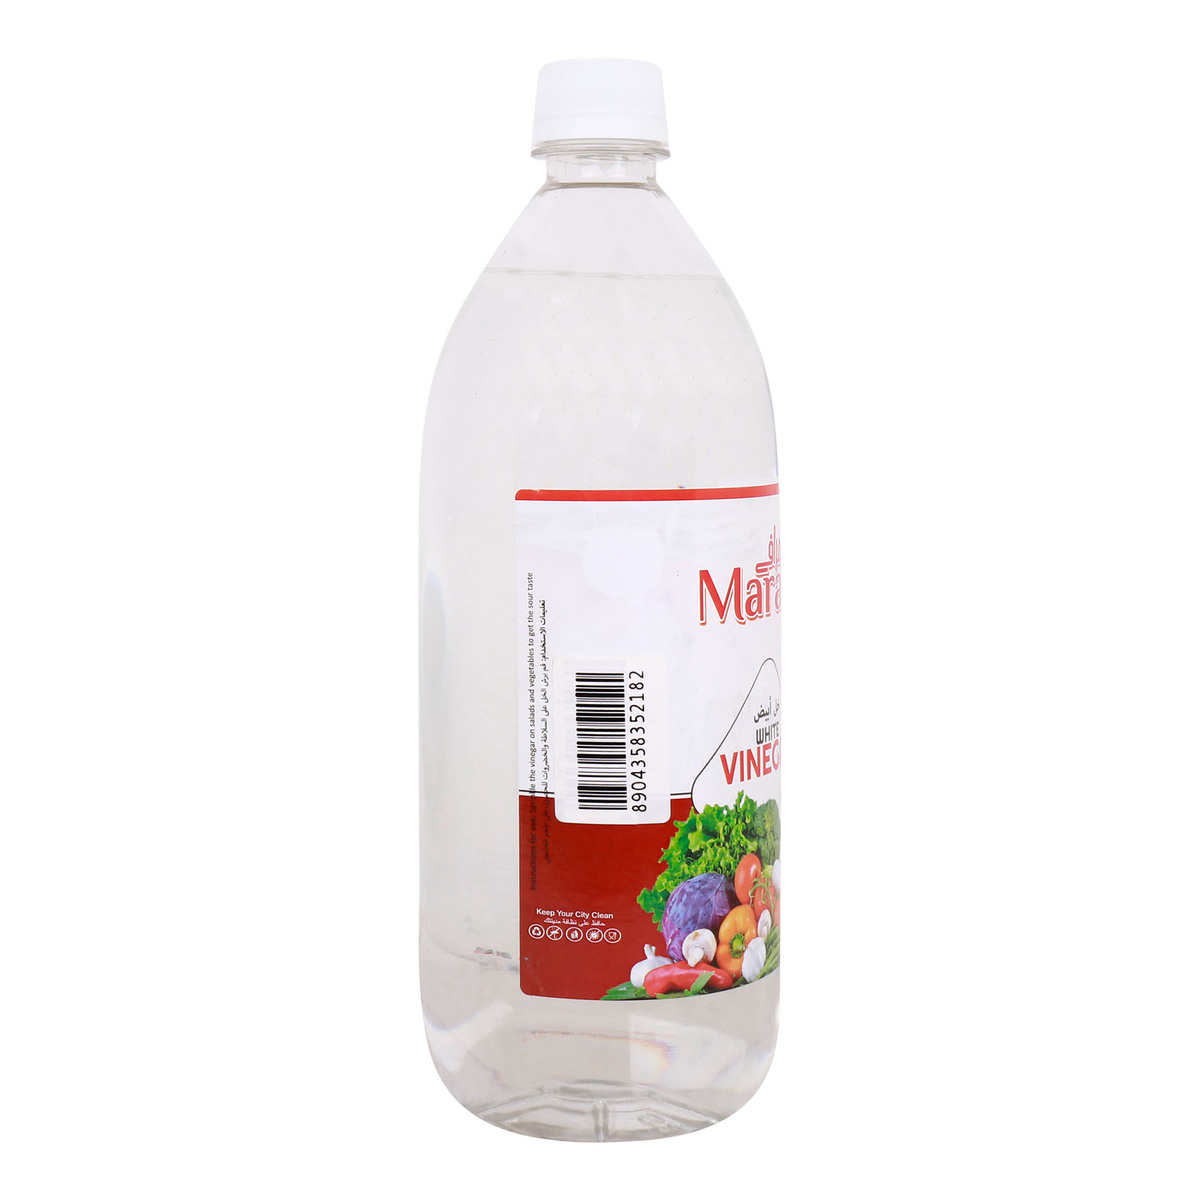 Marafy White Vinegar 946 ml